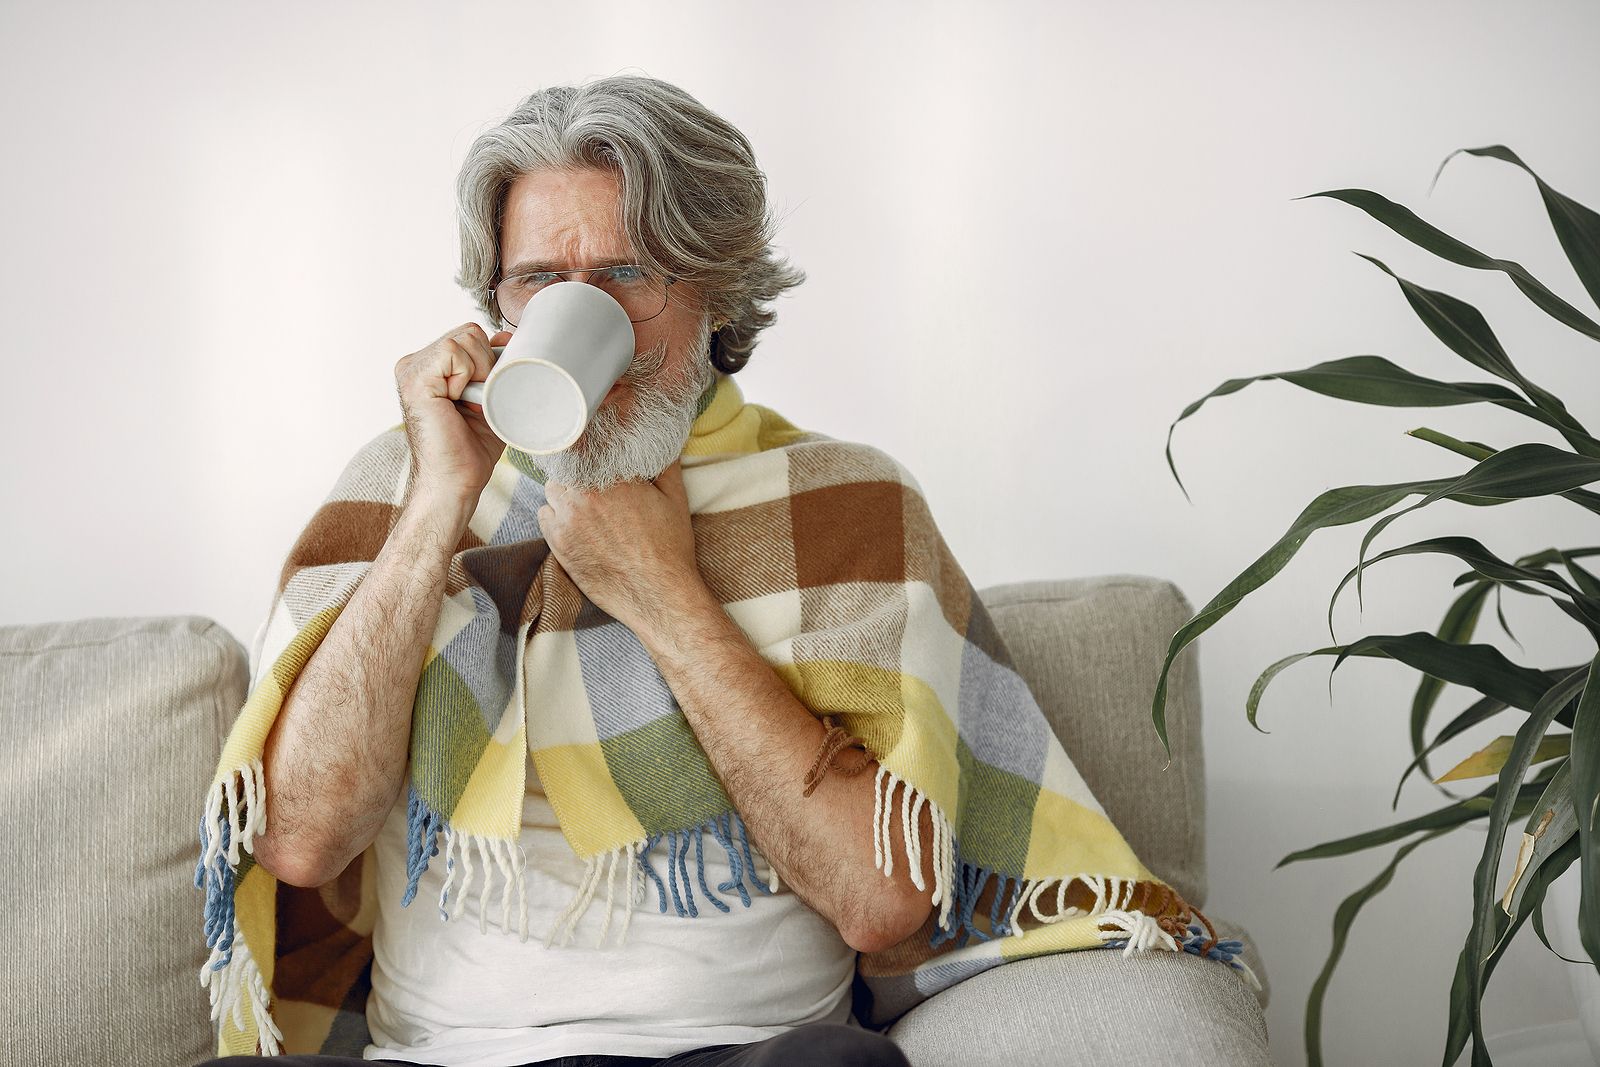 Consejos de Sanidad contra el frío: respirar por la nariz y vestir varias capas finas de ropa